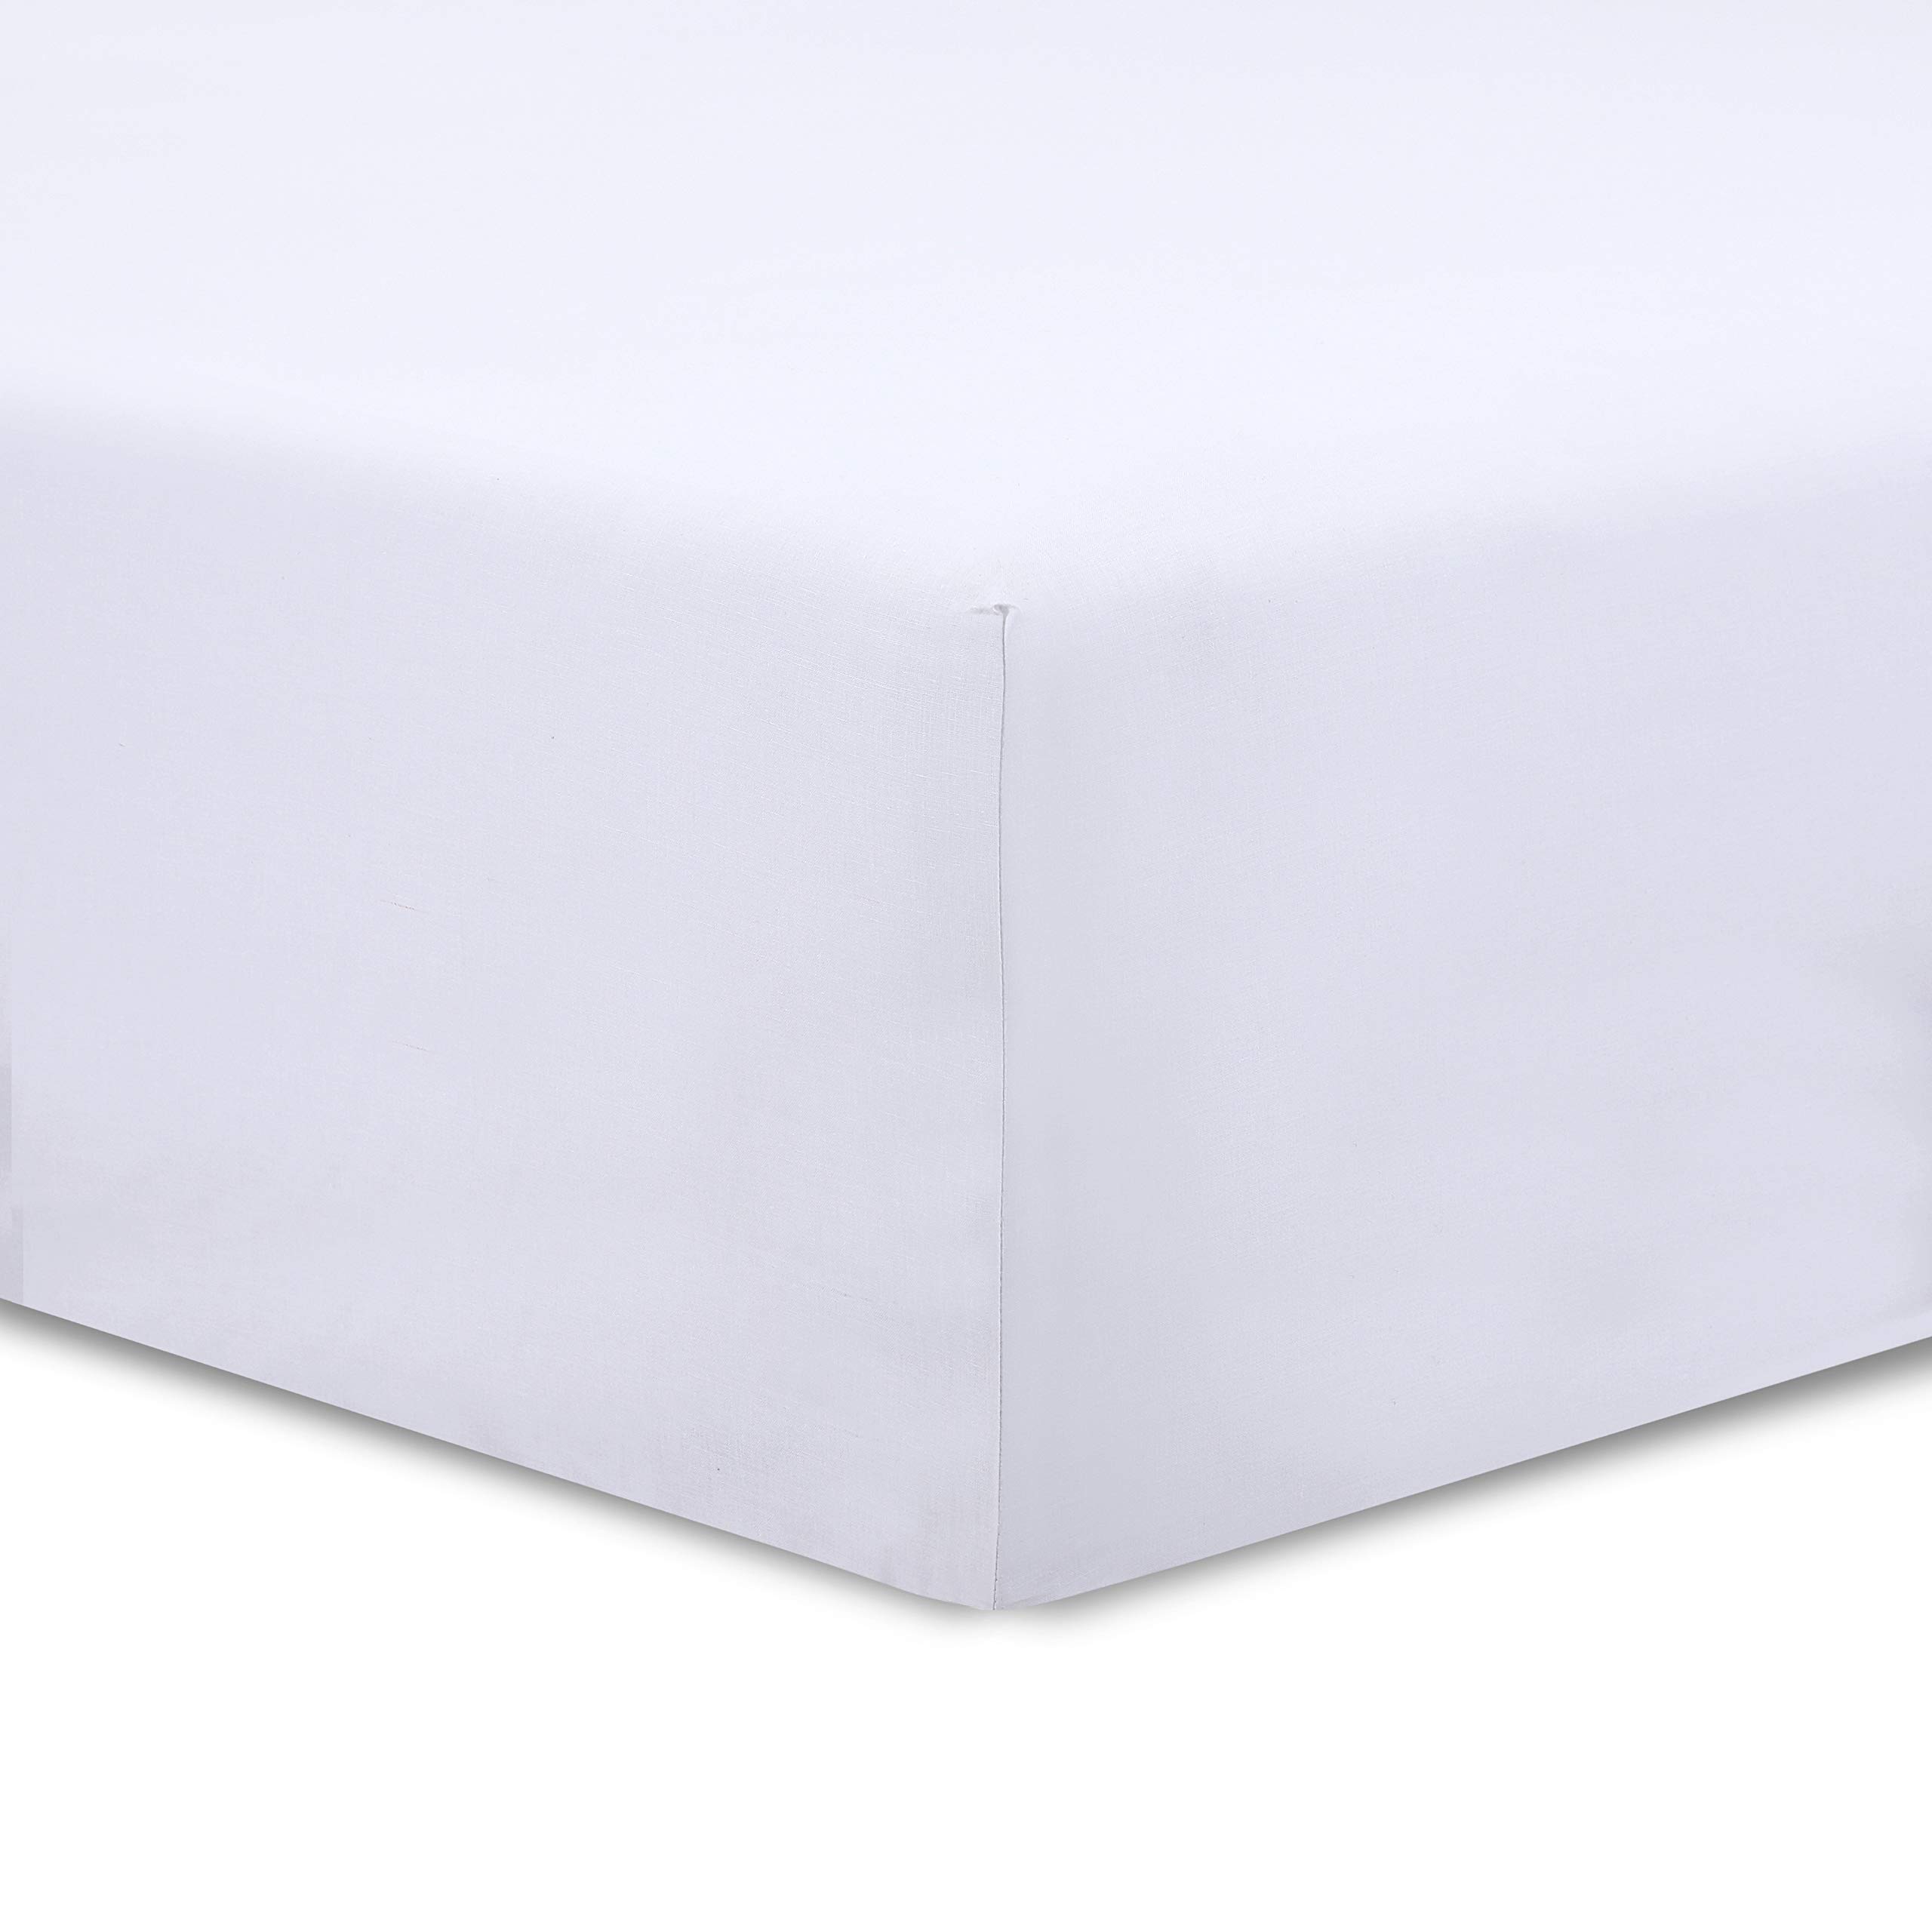 VISION - Set mit 2 Spannbettlaken, 90 x 200 cm, Farbe: Weiß, 100 % Baumwolle, 57 Fäden/cm², 4 elastische Ecken, Spannhöhe 30 cm